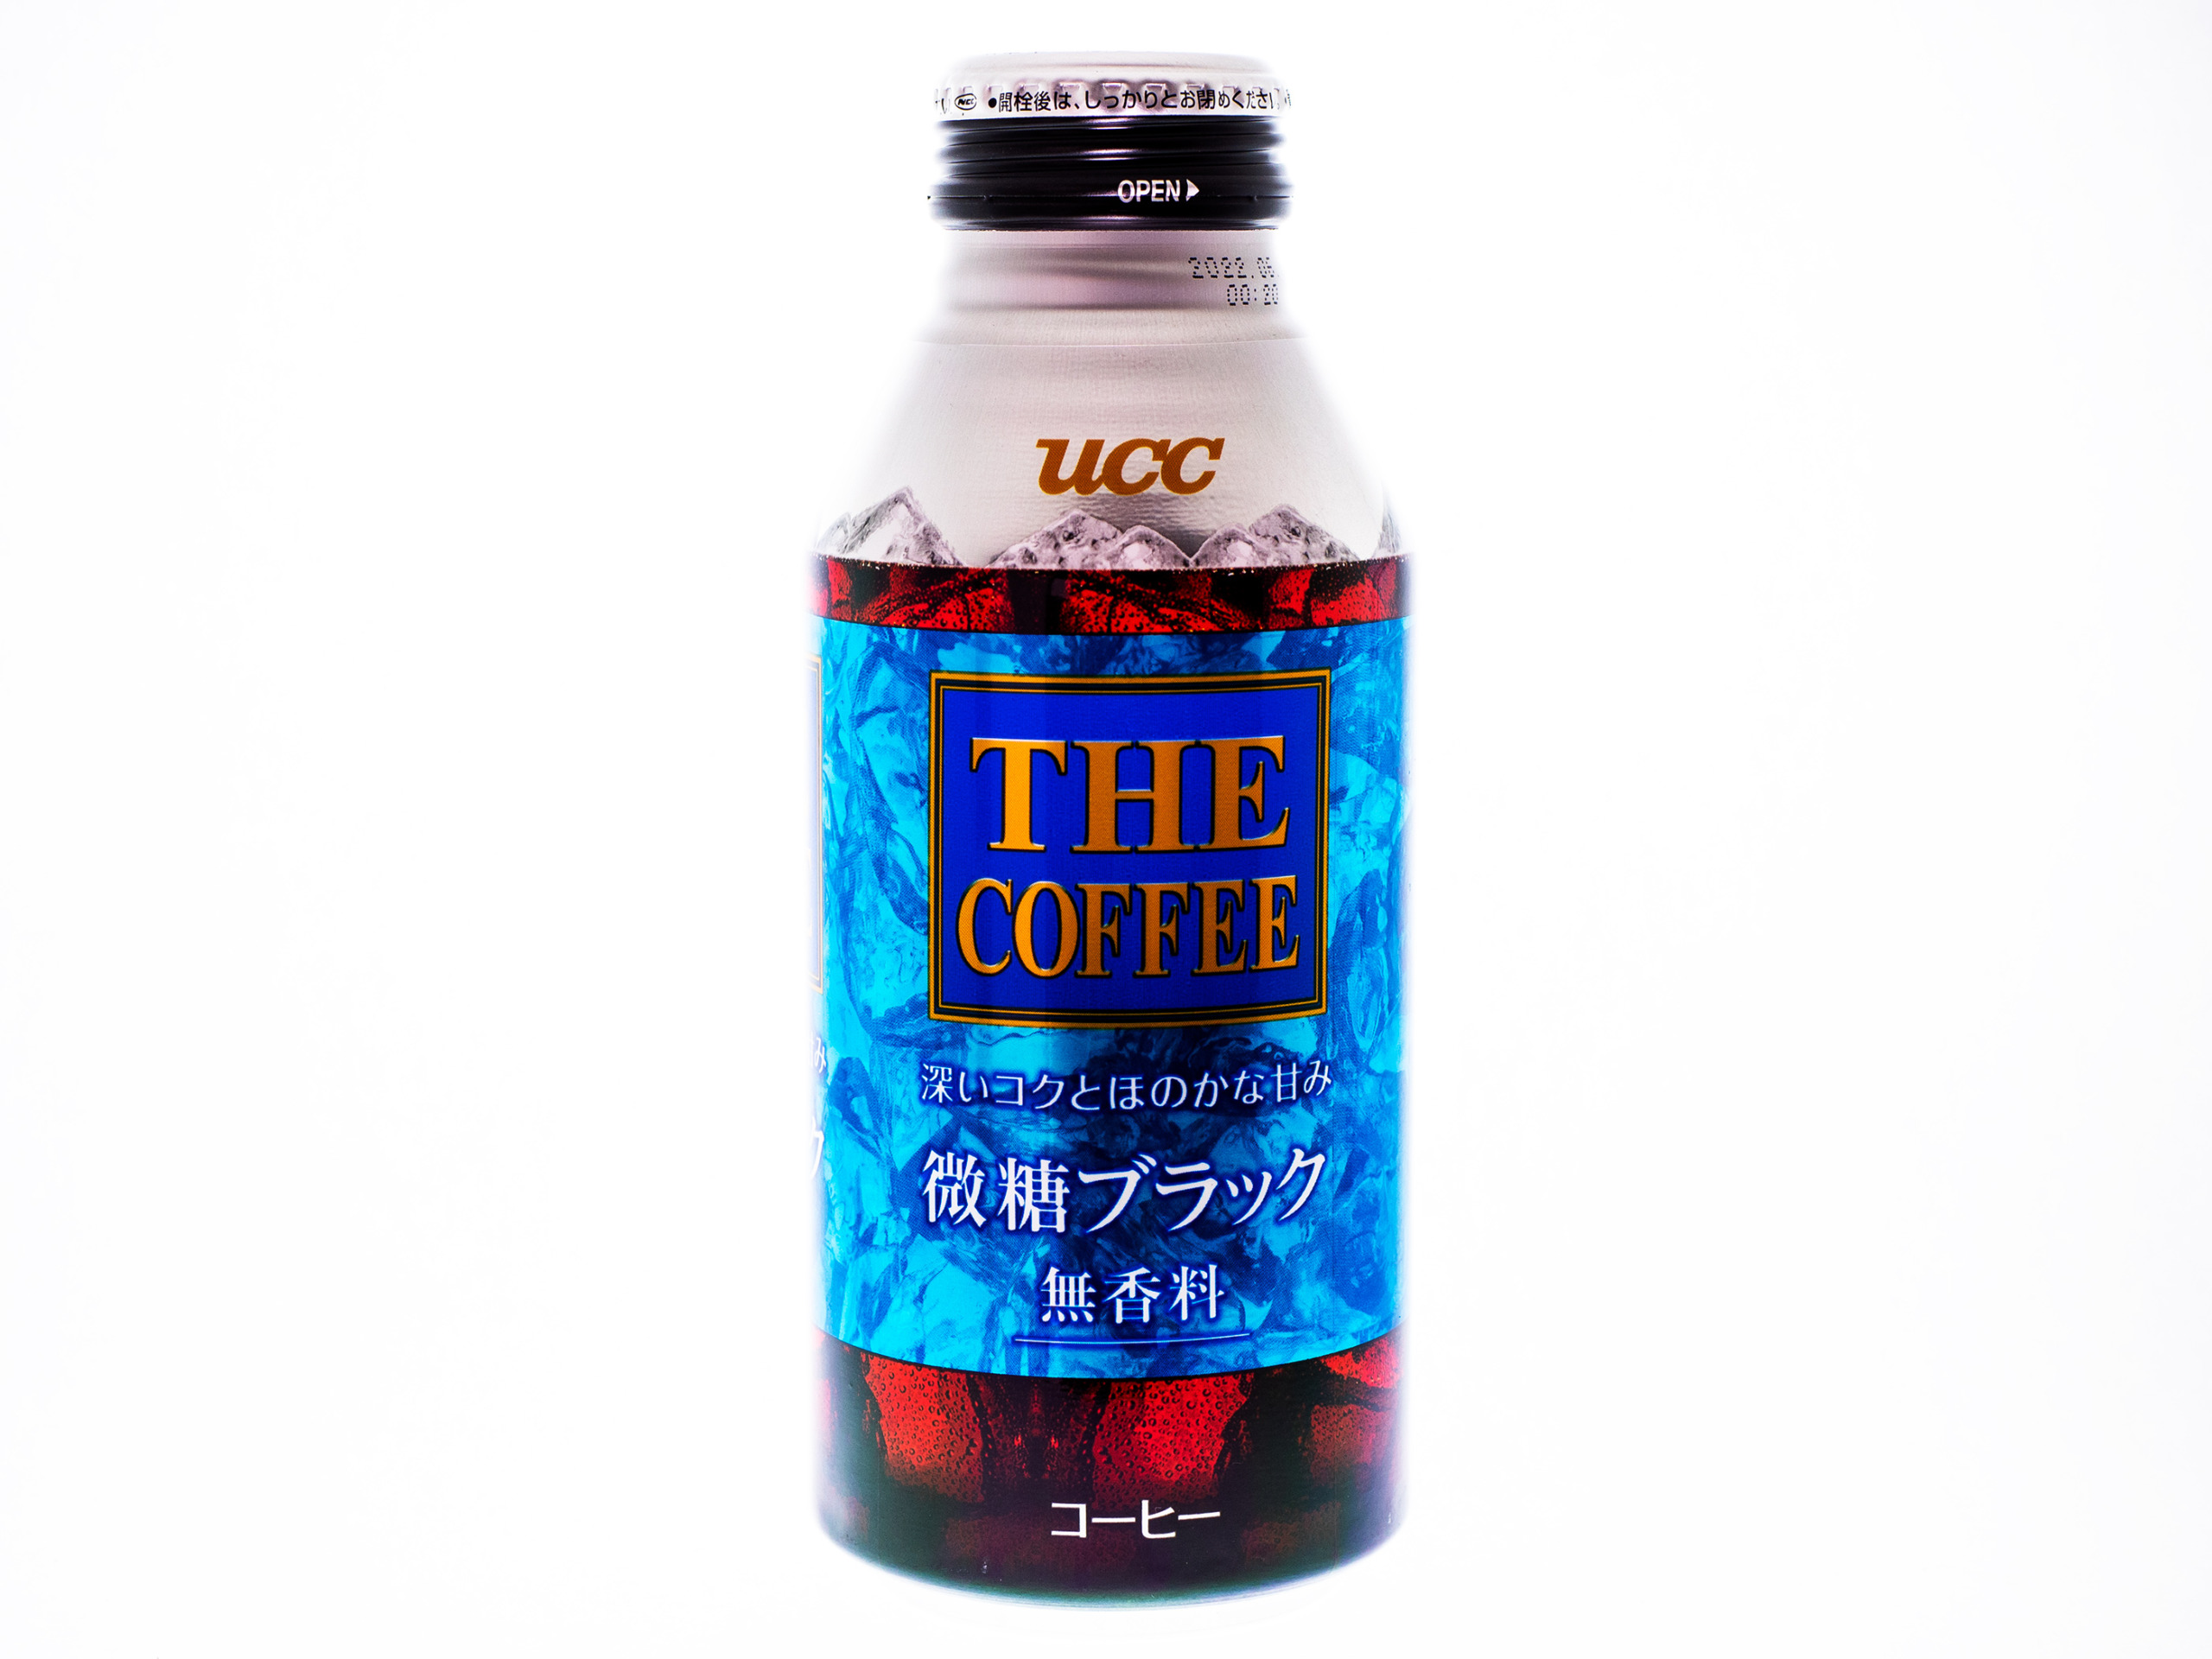 ucc THE COFFEE 微糖ブラック ボトル缶375g